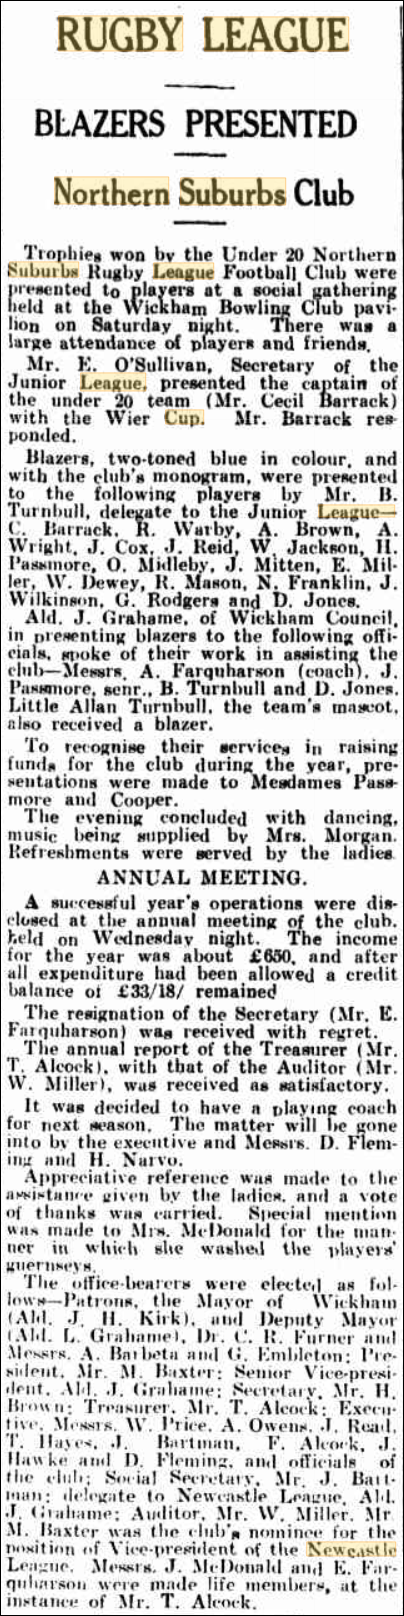 Annual club meeting 24th December 1934.